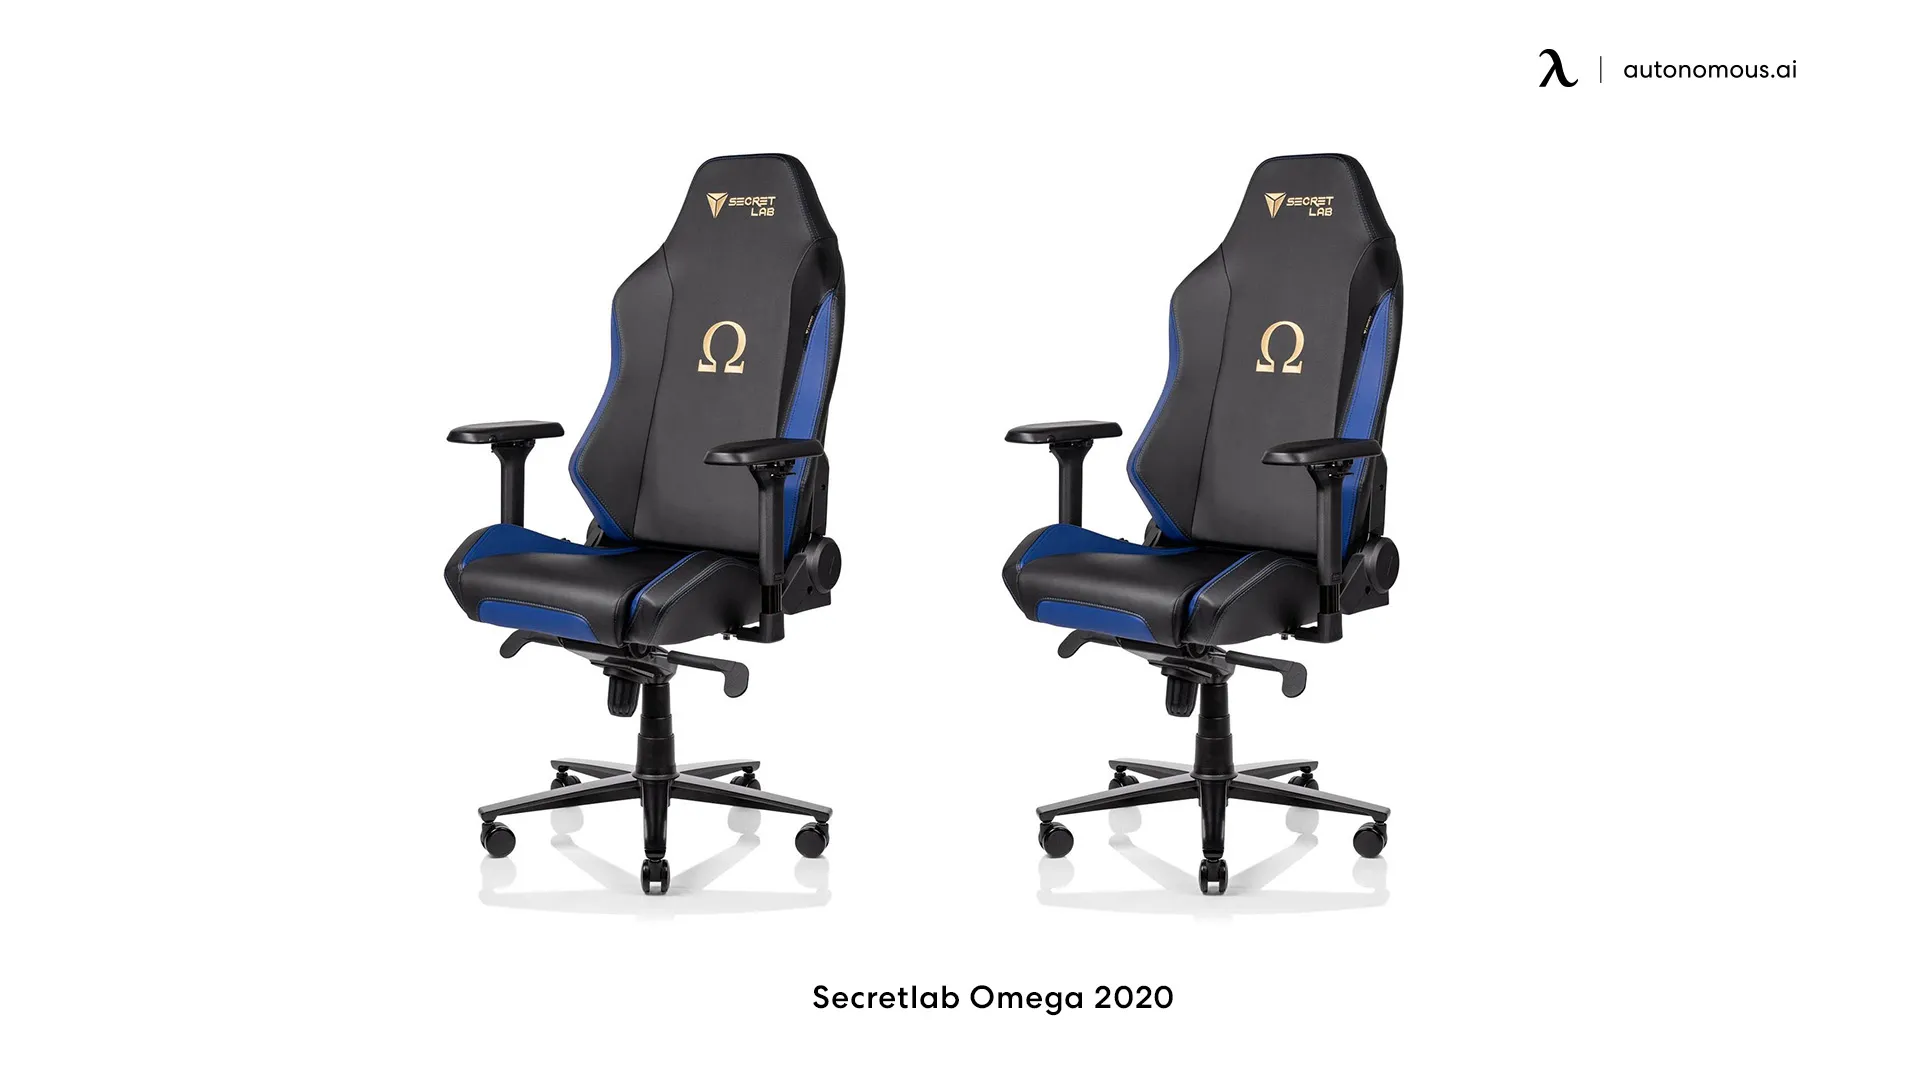 Secretlab Omega heavy duty office chairs